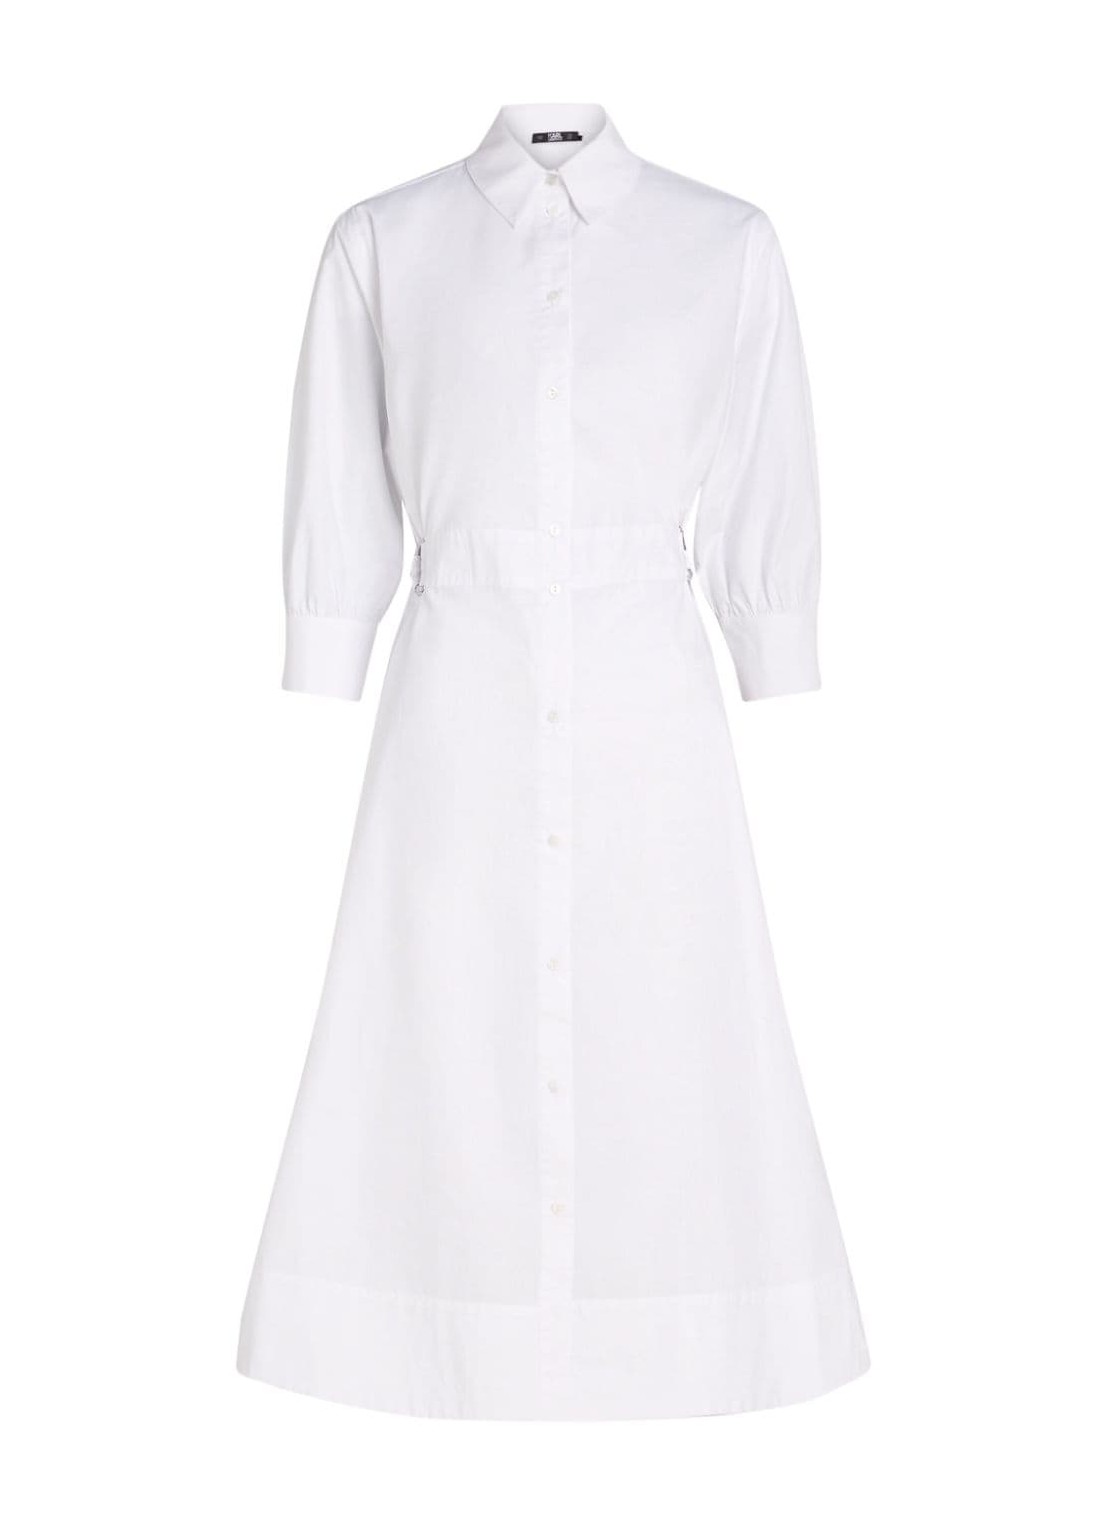 Vestido karl lagerfeld dress womanshirt dress - 241w1300 100 talla 42
 